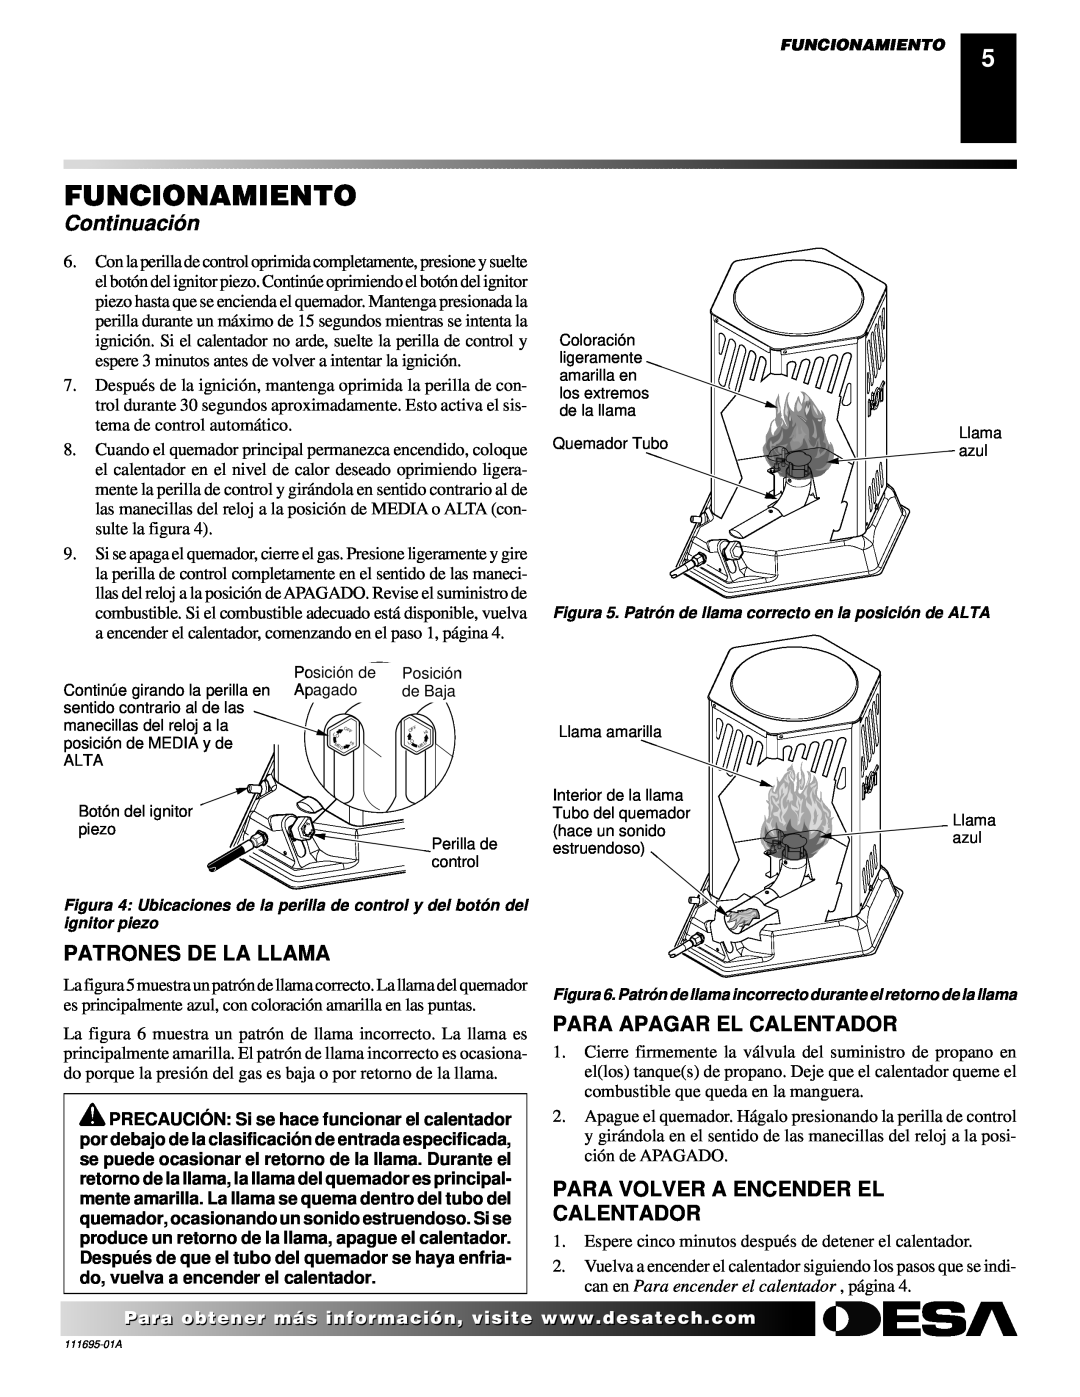 Desa 000 Btu/hr Models owner manual Funcionamiento, Continuació n, Patrones De La Llama, Para Apagar El Calentador 